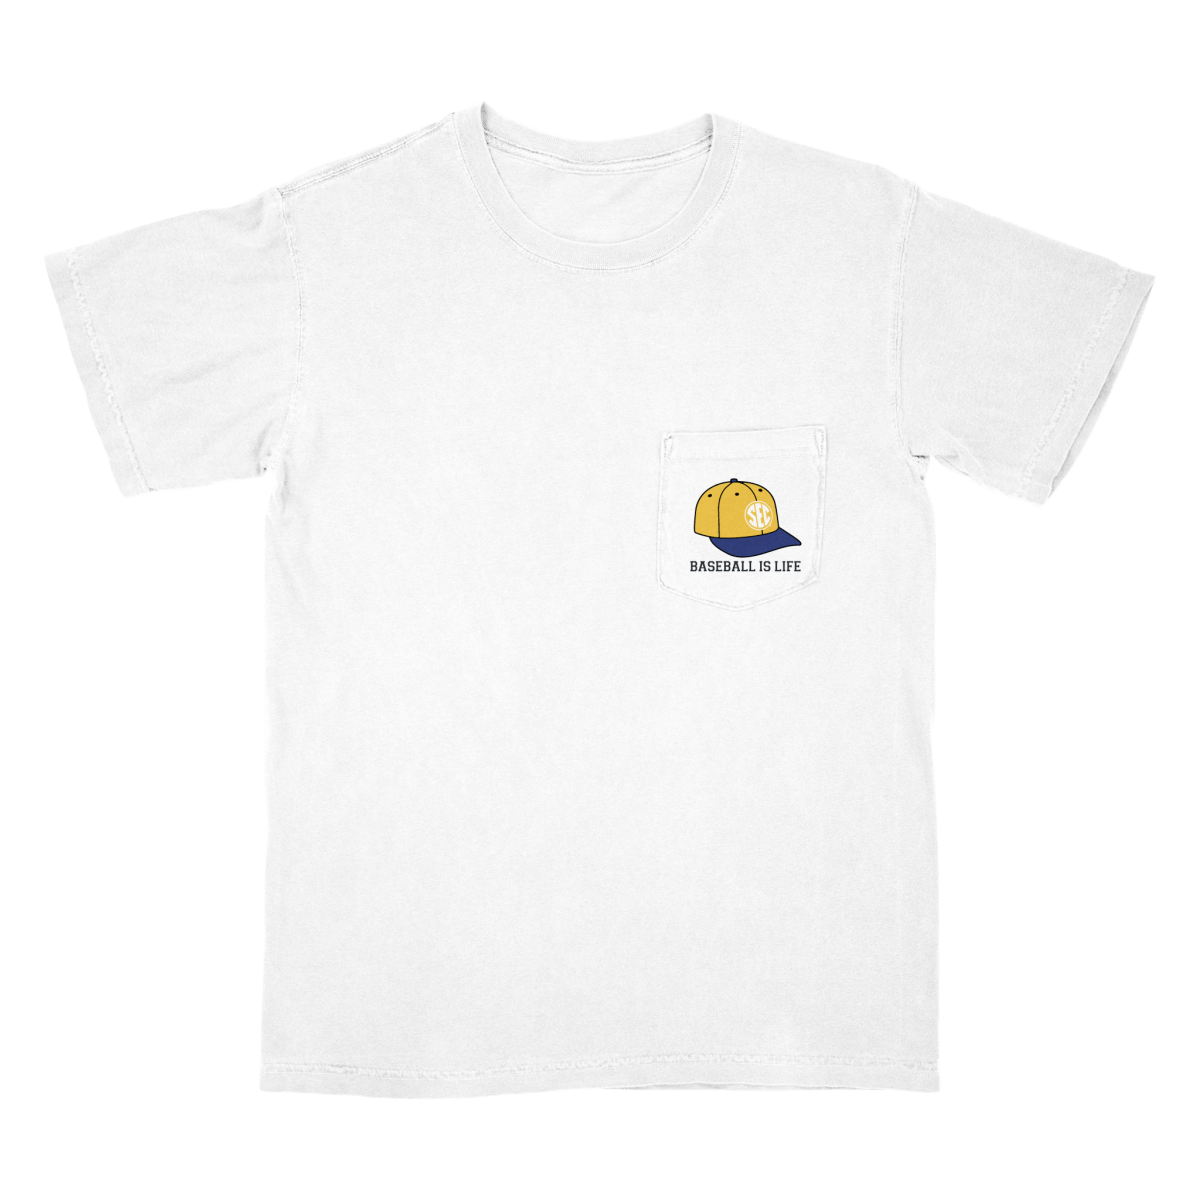 Louisiana State Shirt | Louisiana State Map Shirt | Louisiana Pride Shirt | Louisiana Home Shirt | 12151